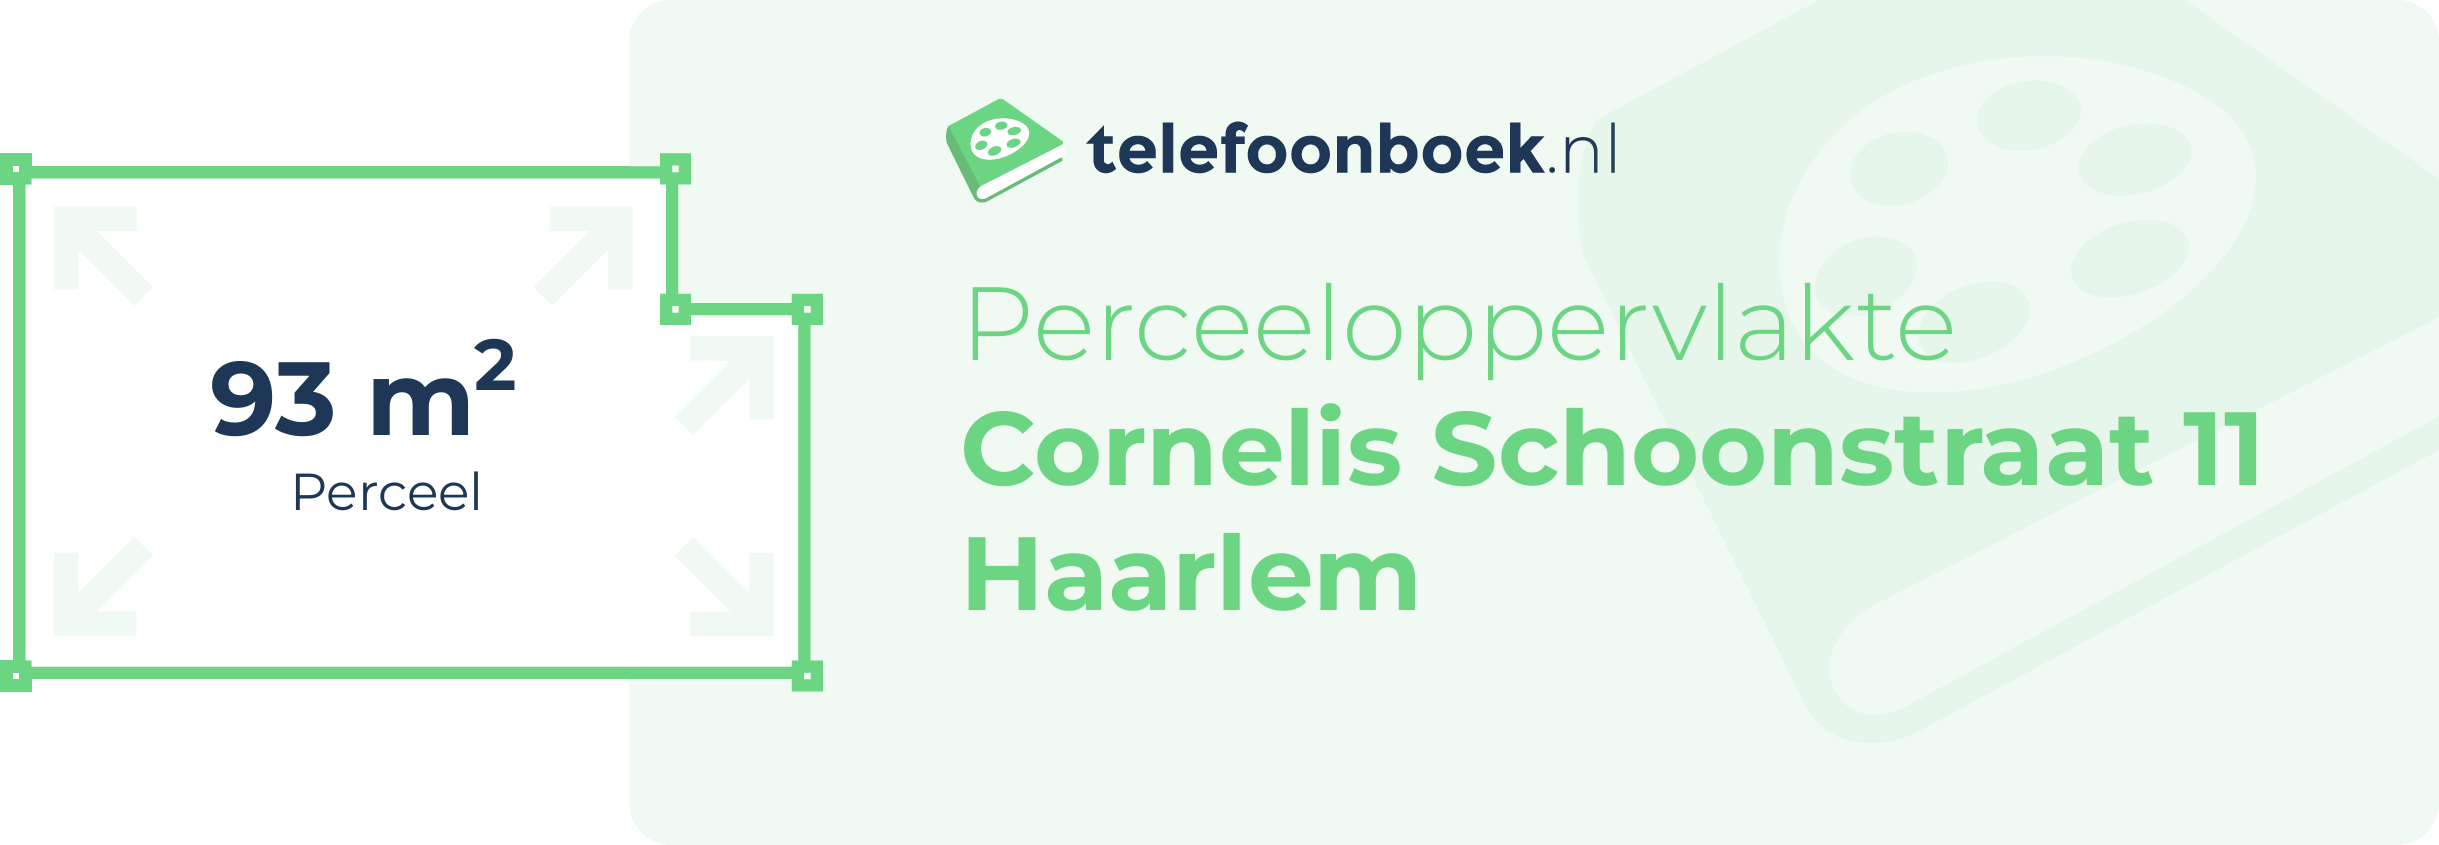 Perceeloppervlakte Cornelis Schoonstraat 11 Haarlem